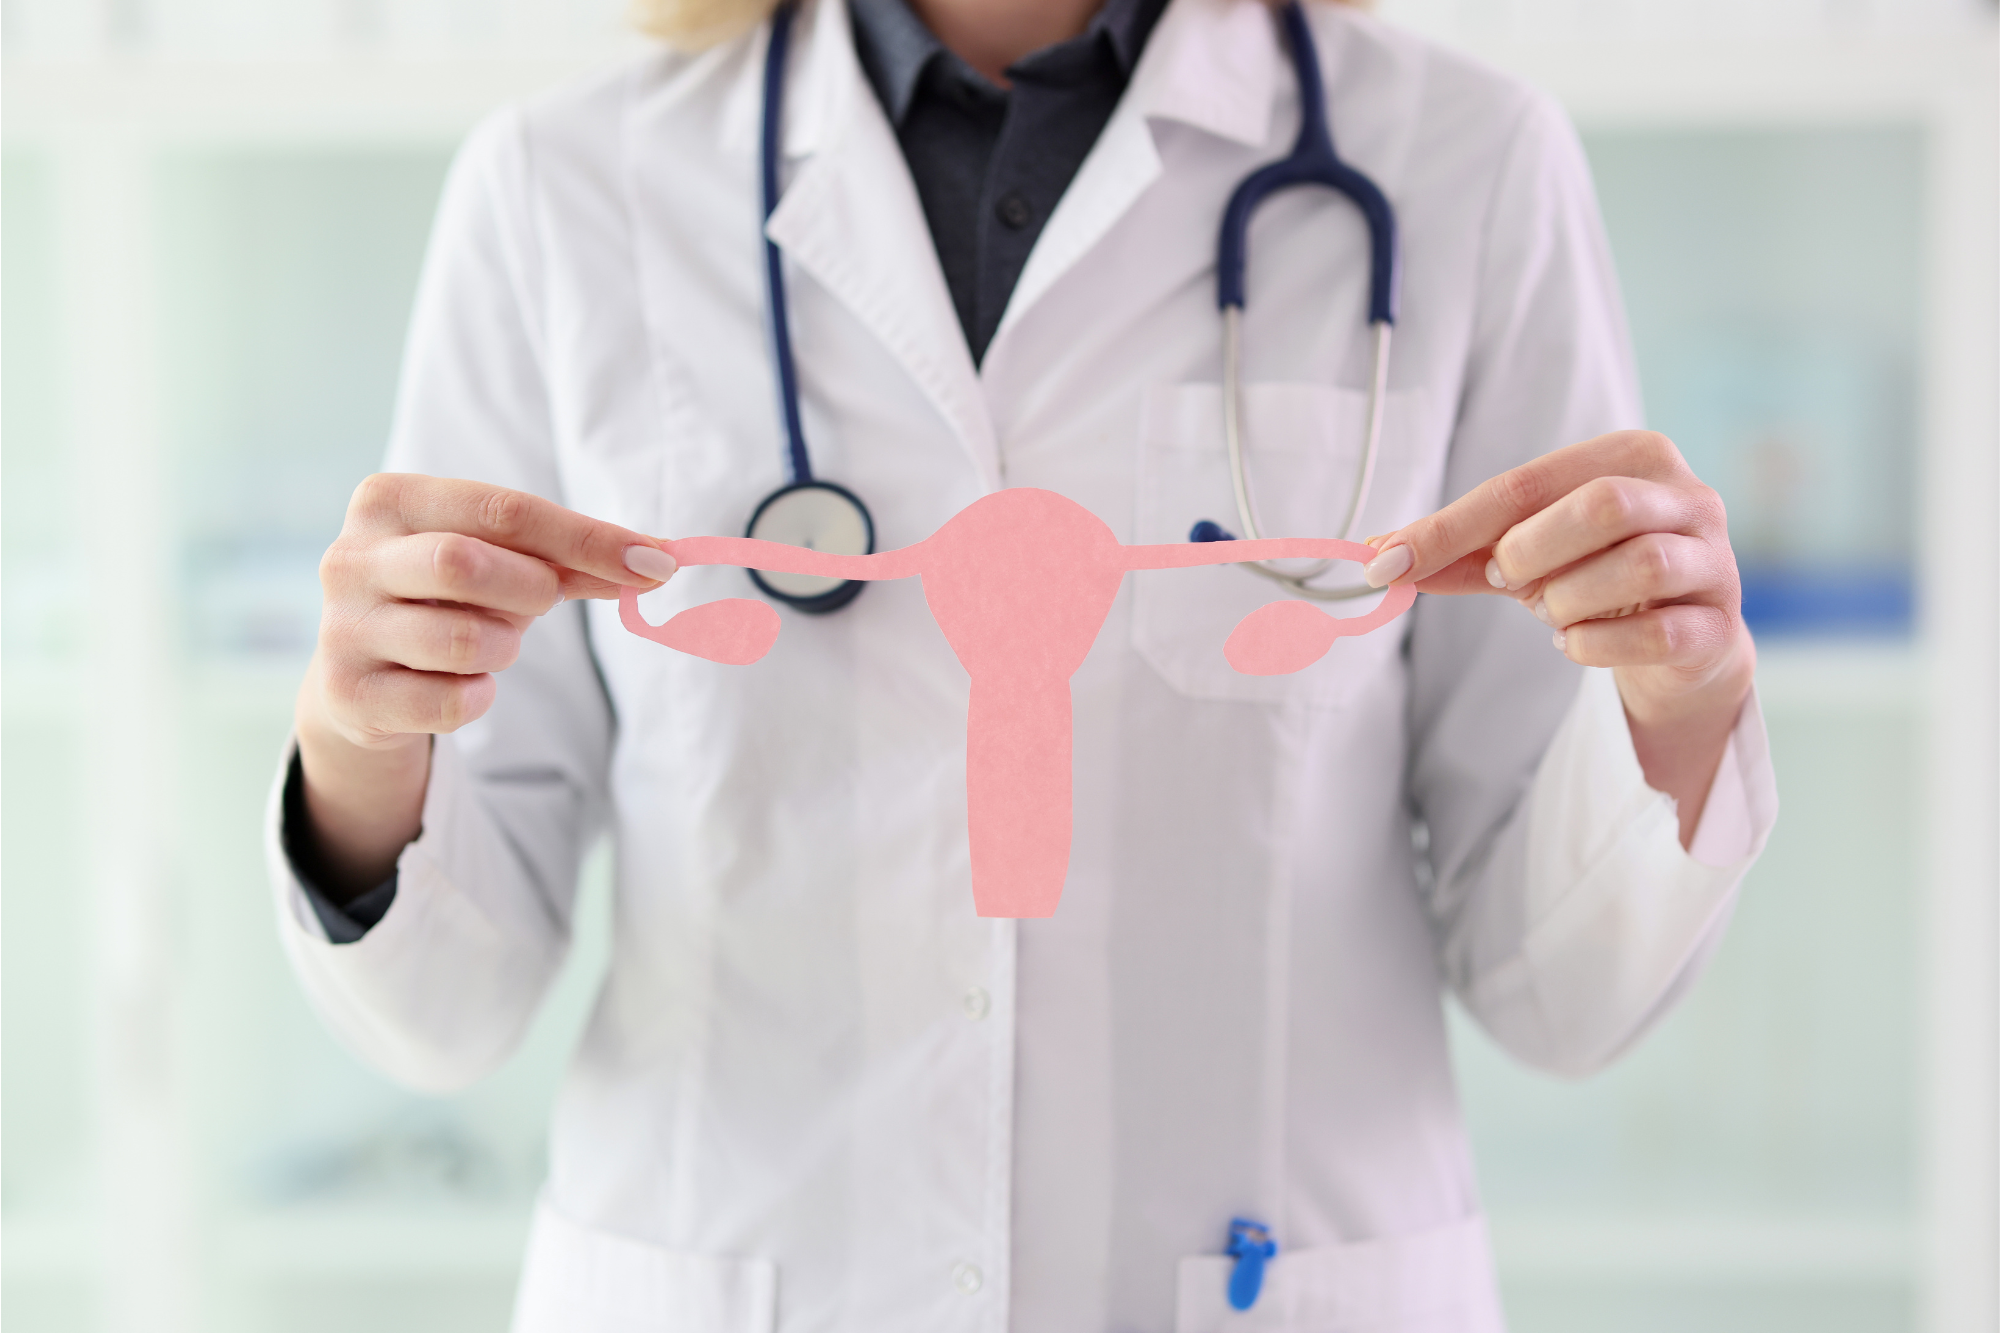 Una donna su 4 non va dal ginecologo da oltre 3 anni